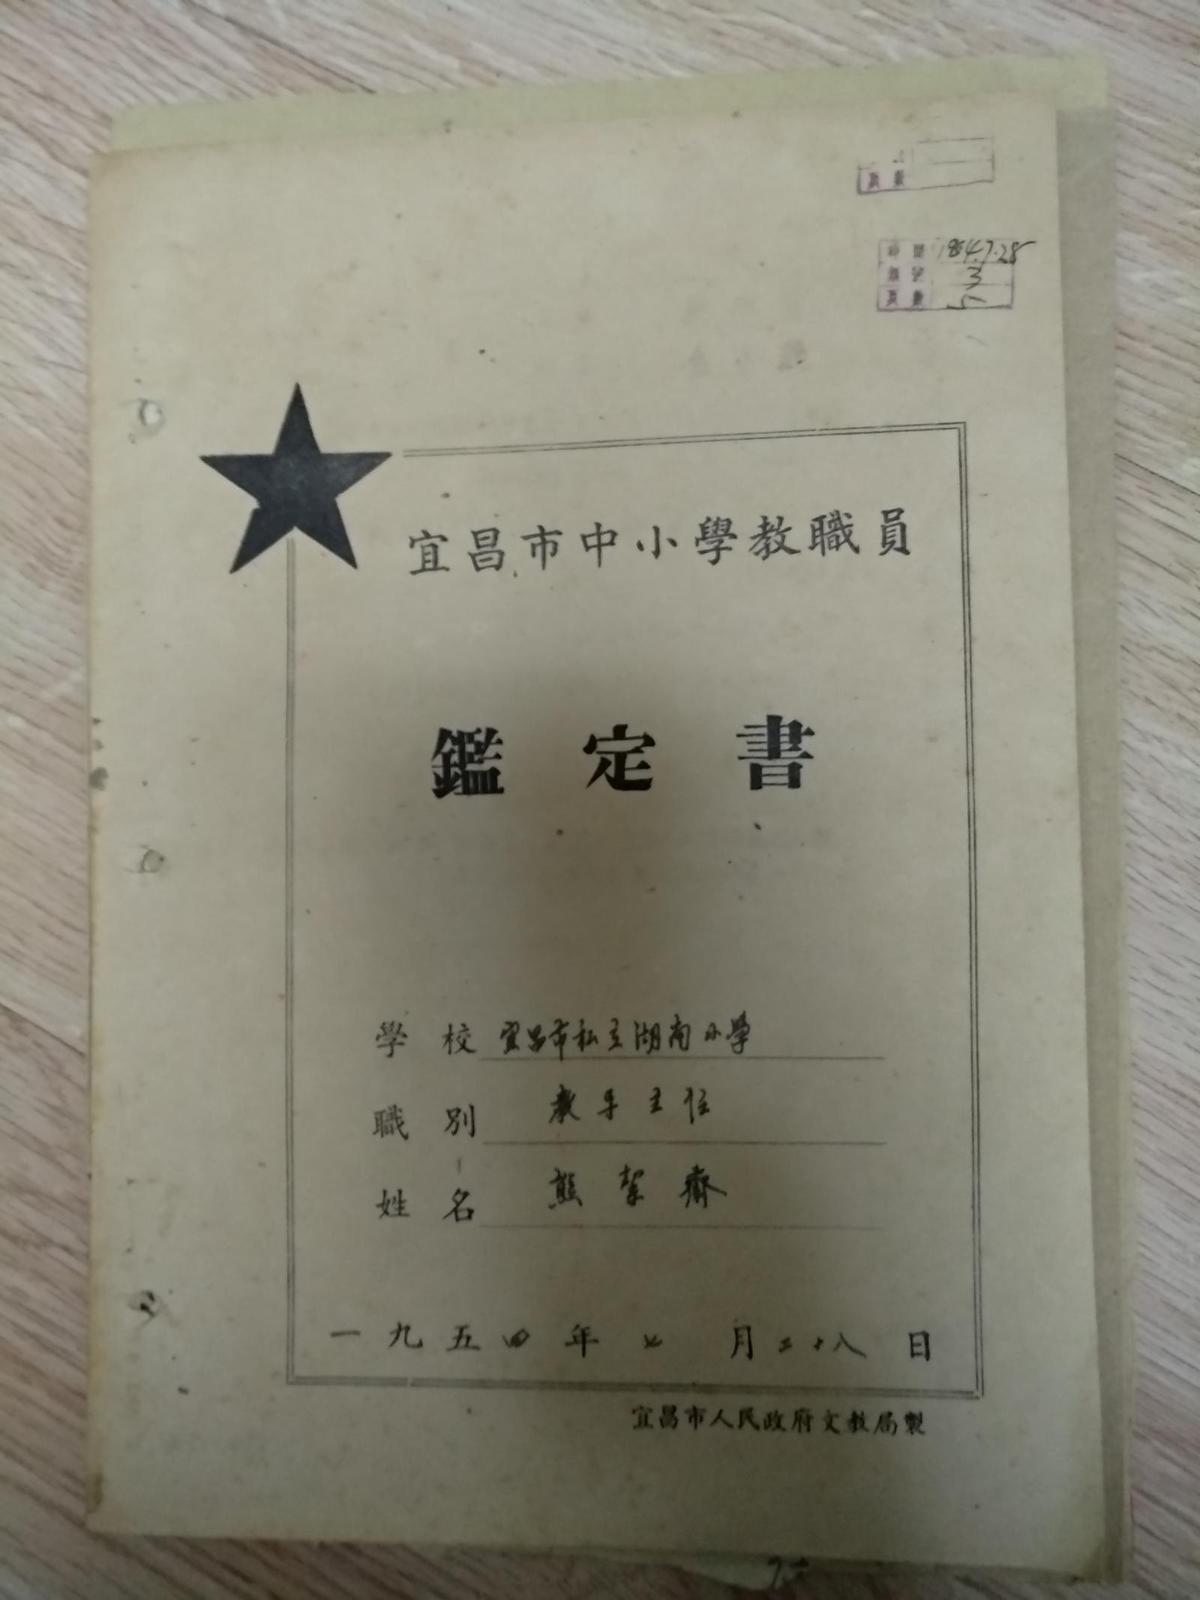 历史资料《私立湖南小学教导主任--熊洁斋的生平资料》 少有时代的印记